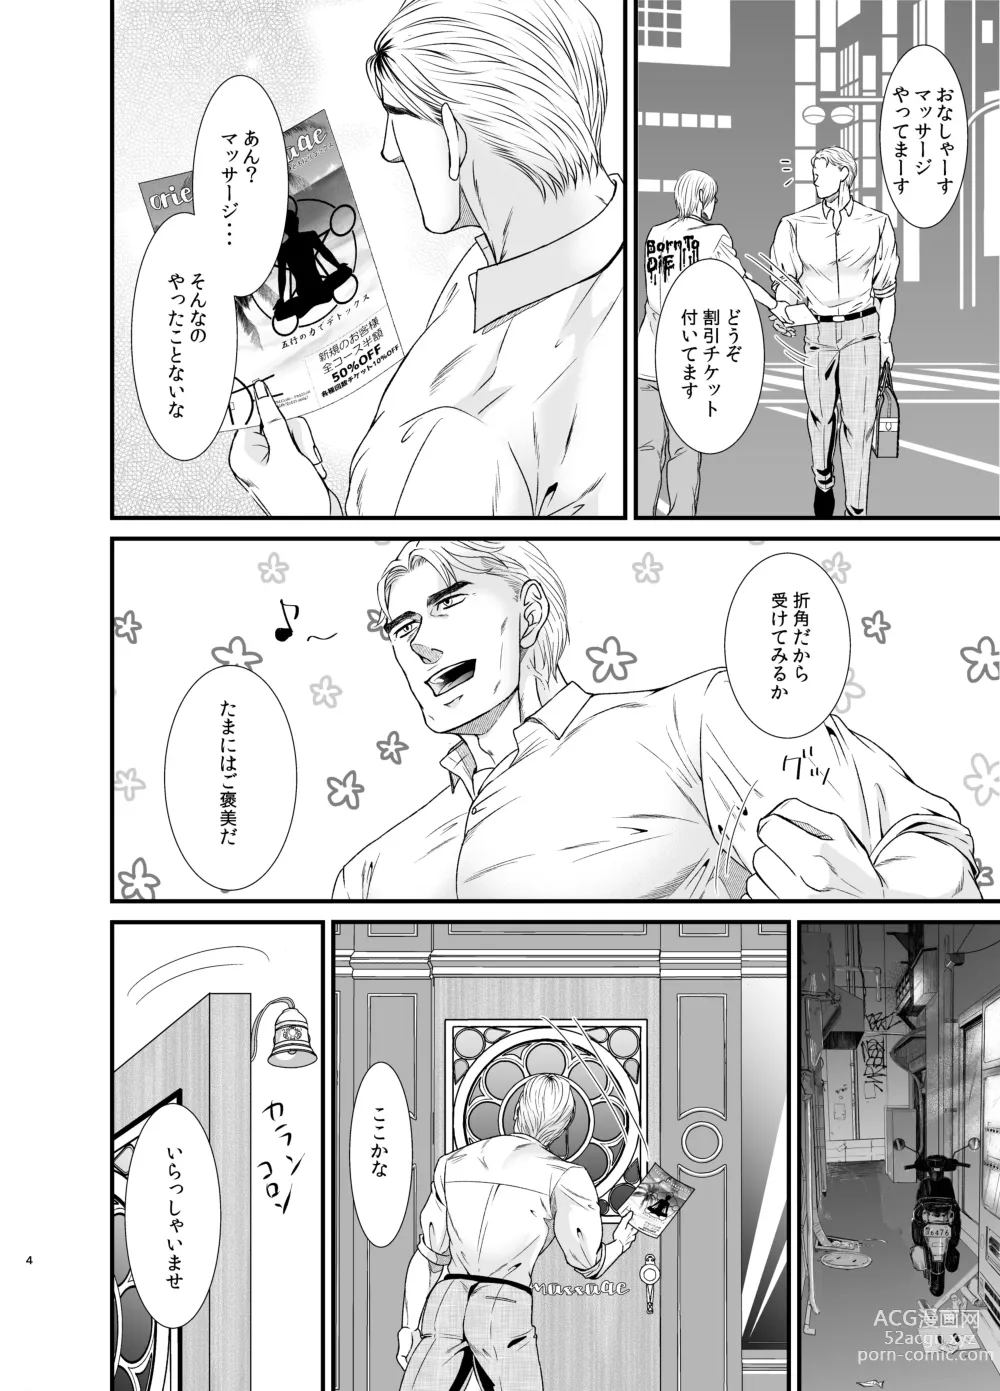 Page 3 of doujinshi Feeling Good